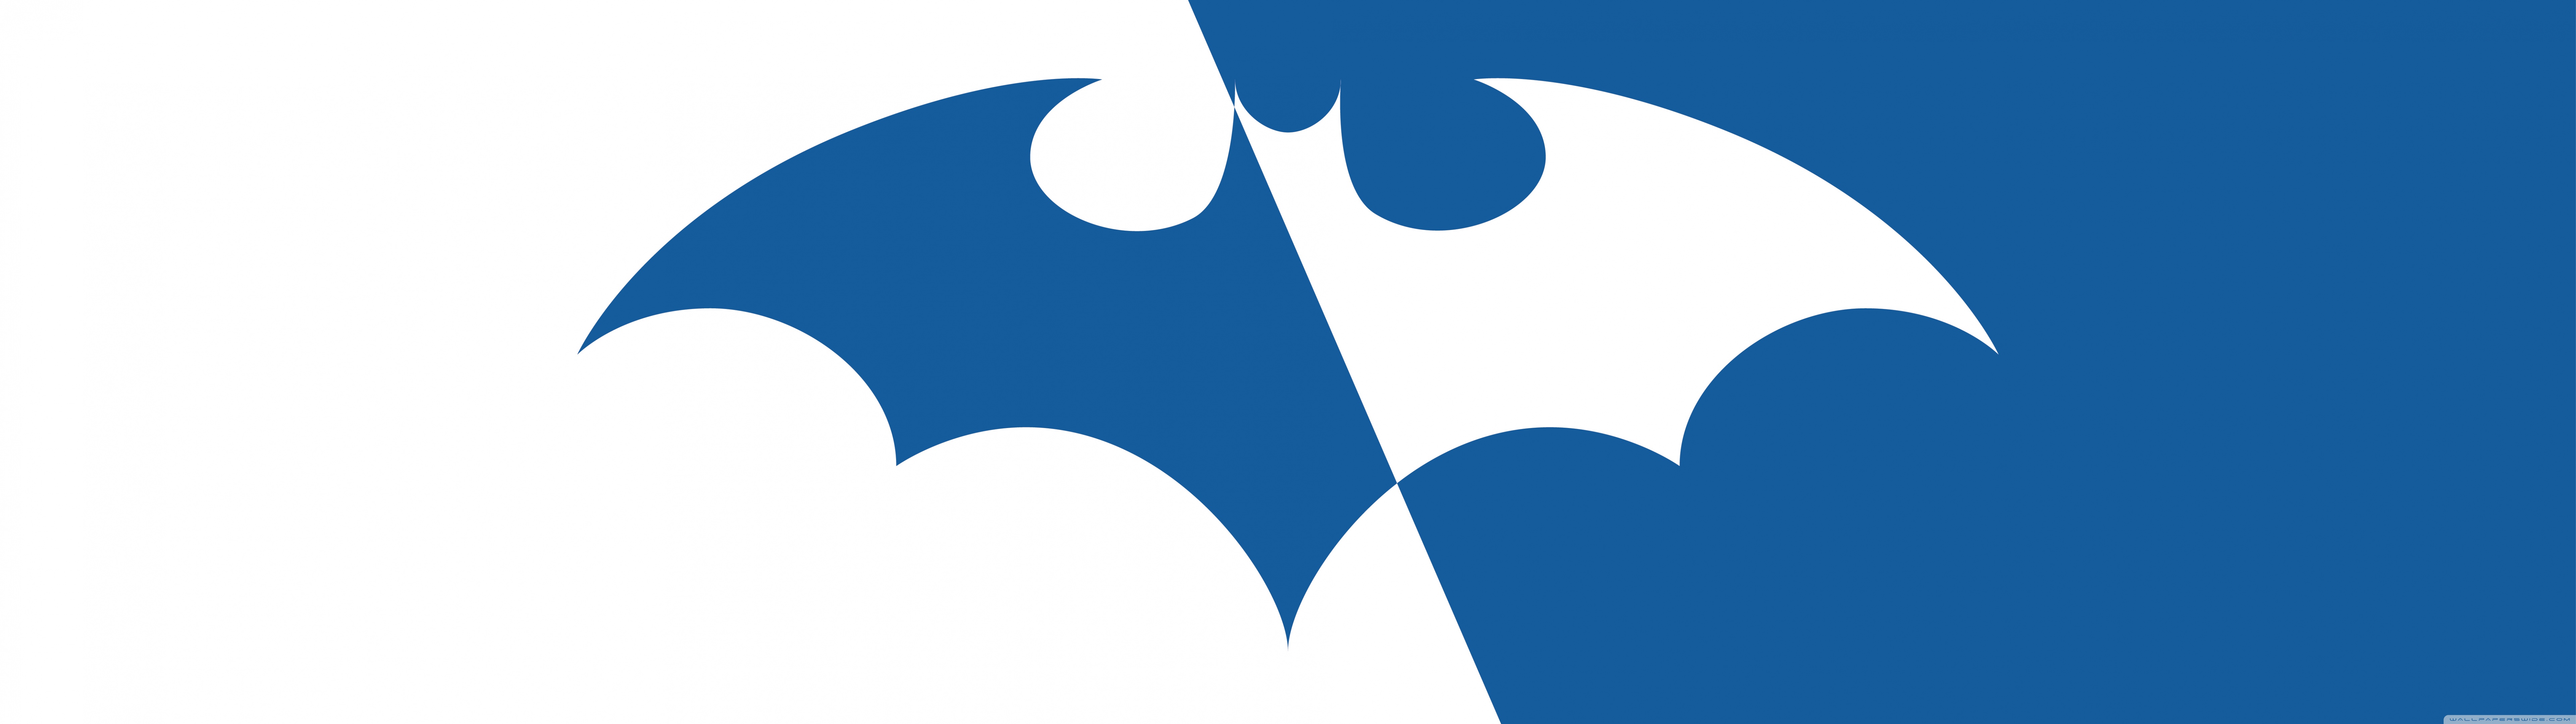 Batman Batman Logo Batman Symbol 7680x2160